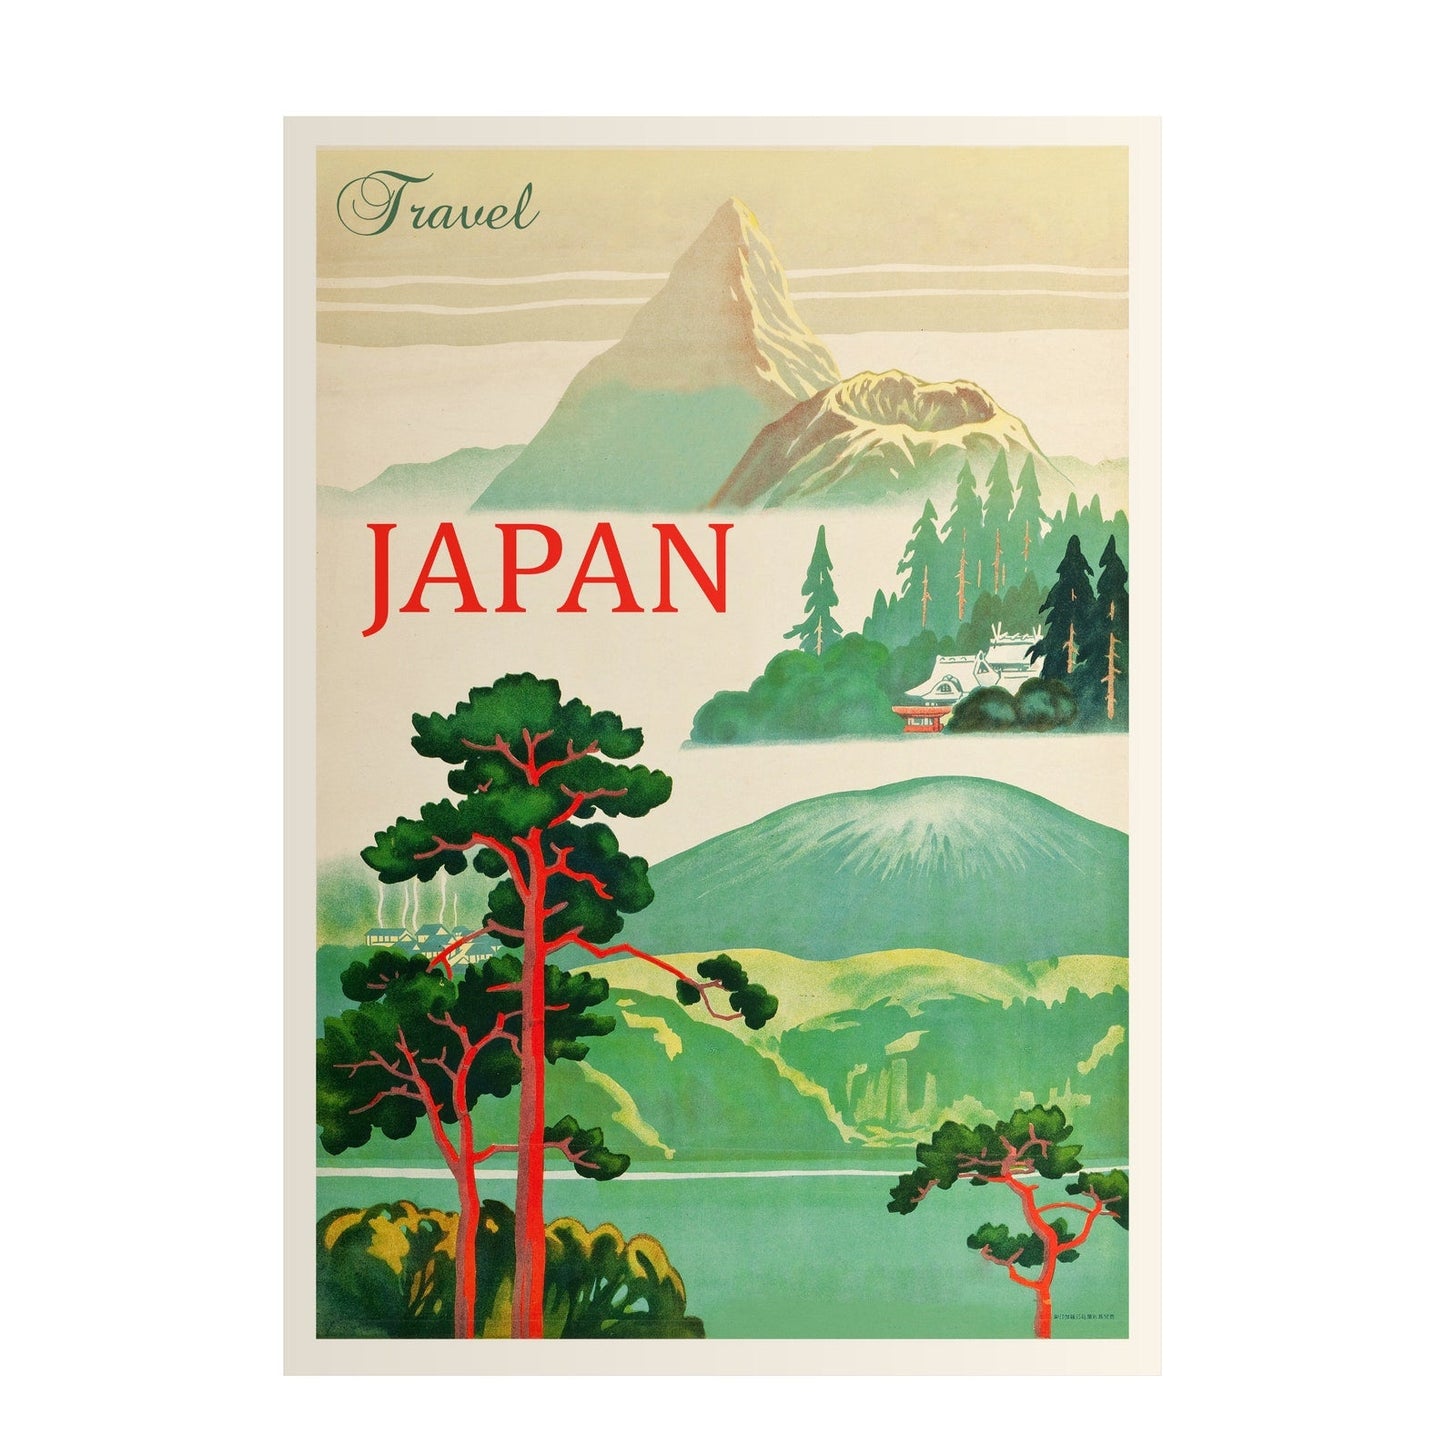 Visit Japan - Vintage Travel Poster